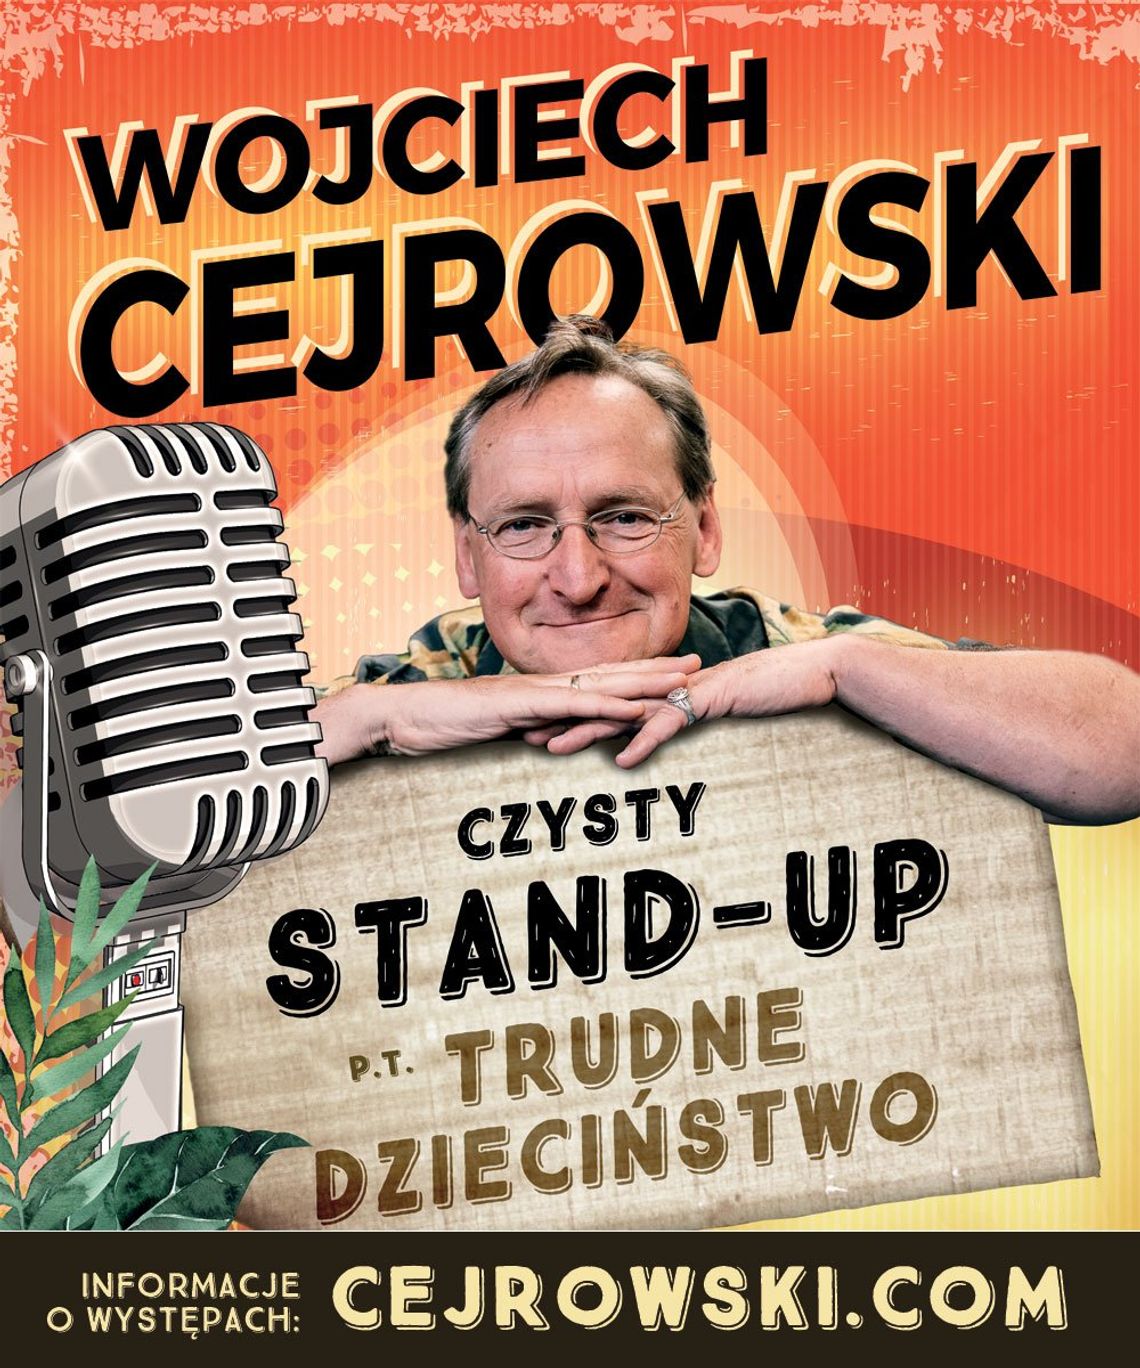 Wojciech Cejrowski - stand-up show „Trudne dzieciństwo”. Smak życia w anegdotach. [WYPRZEDANE]